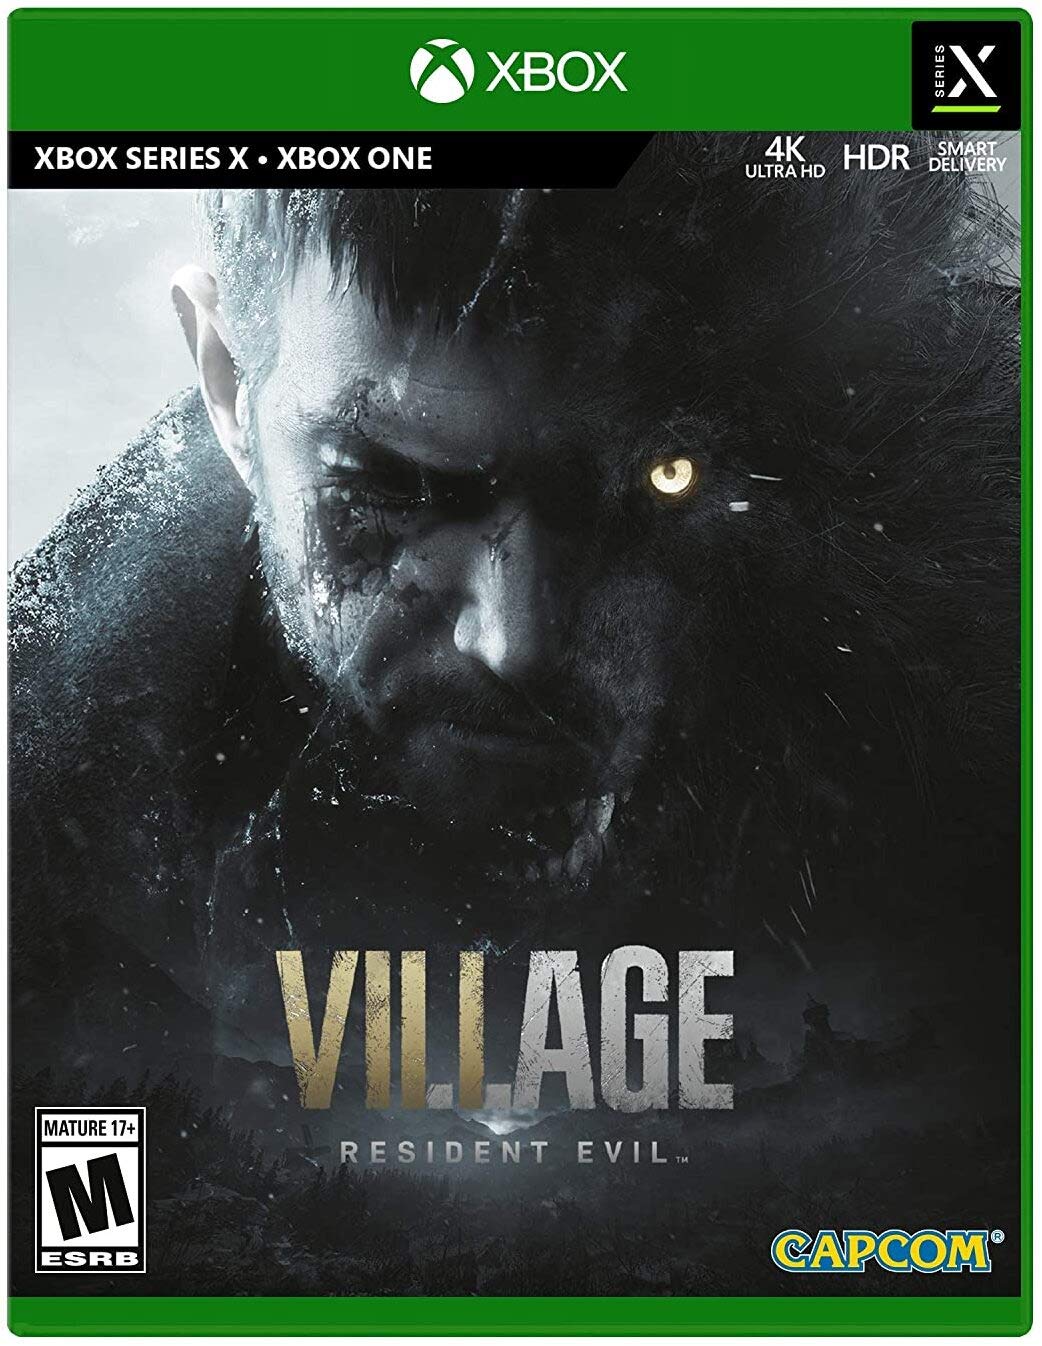 Resident Evil Village (Xbox One/Series X) $9.99 via Amazon